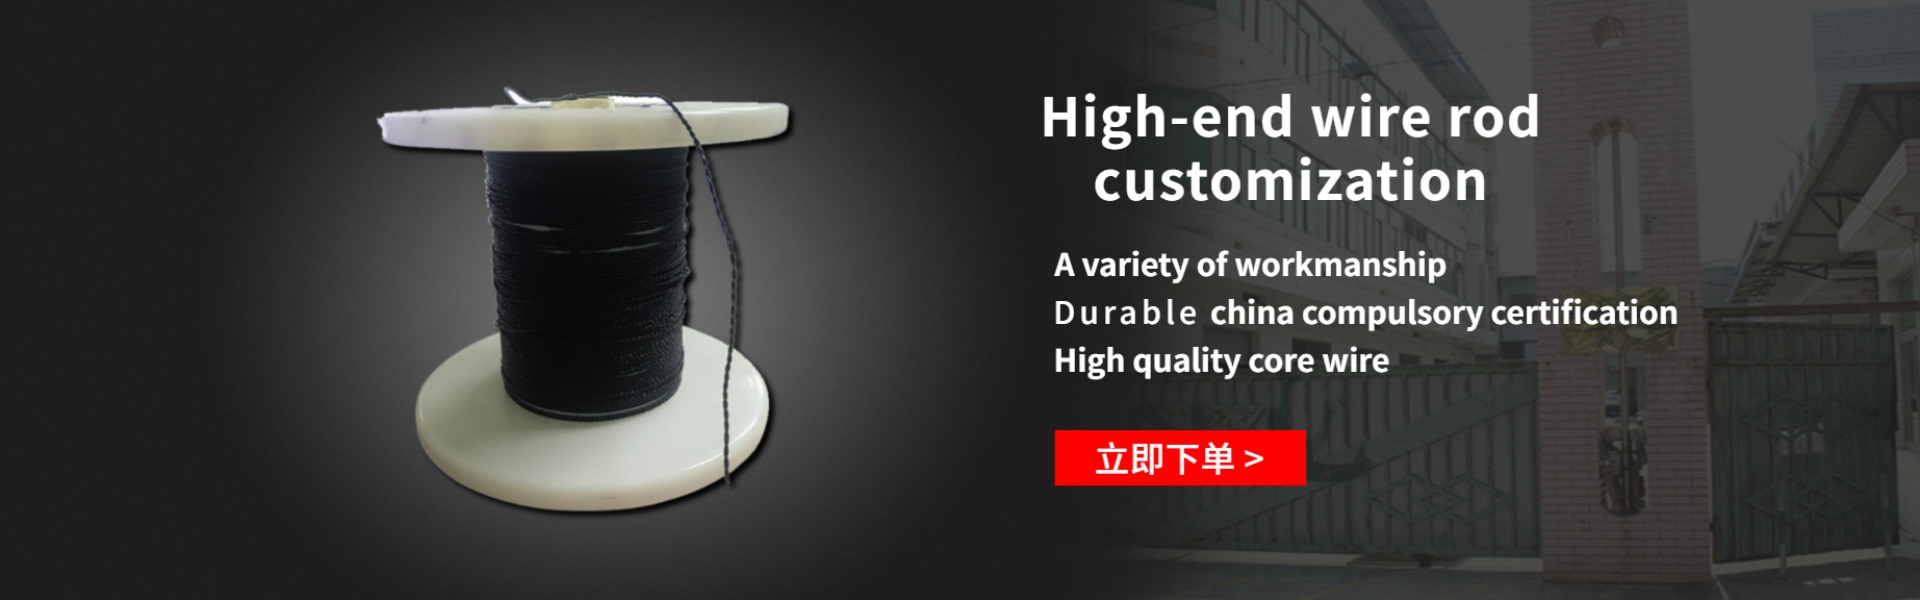 кабель для передачи данных, кабель обновления гарнитуры, соединительный провод,Dongguan Dalang Zili Wire Factory